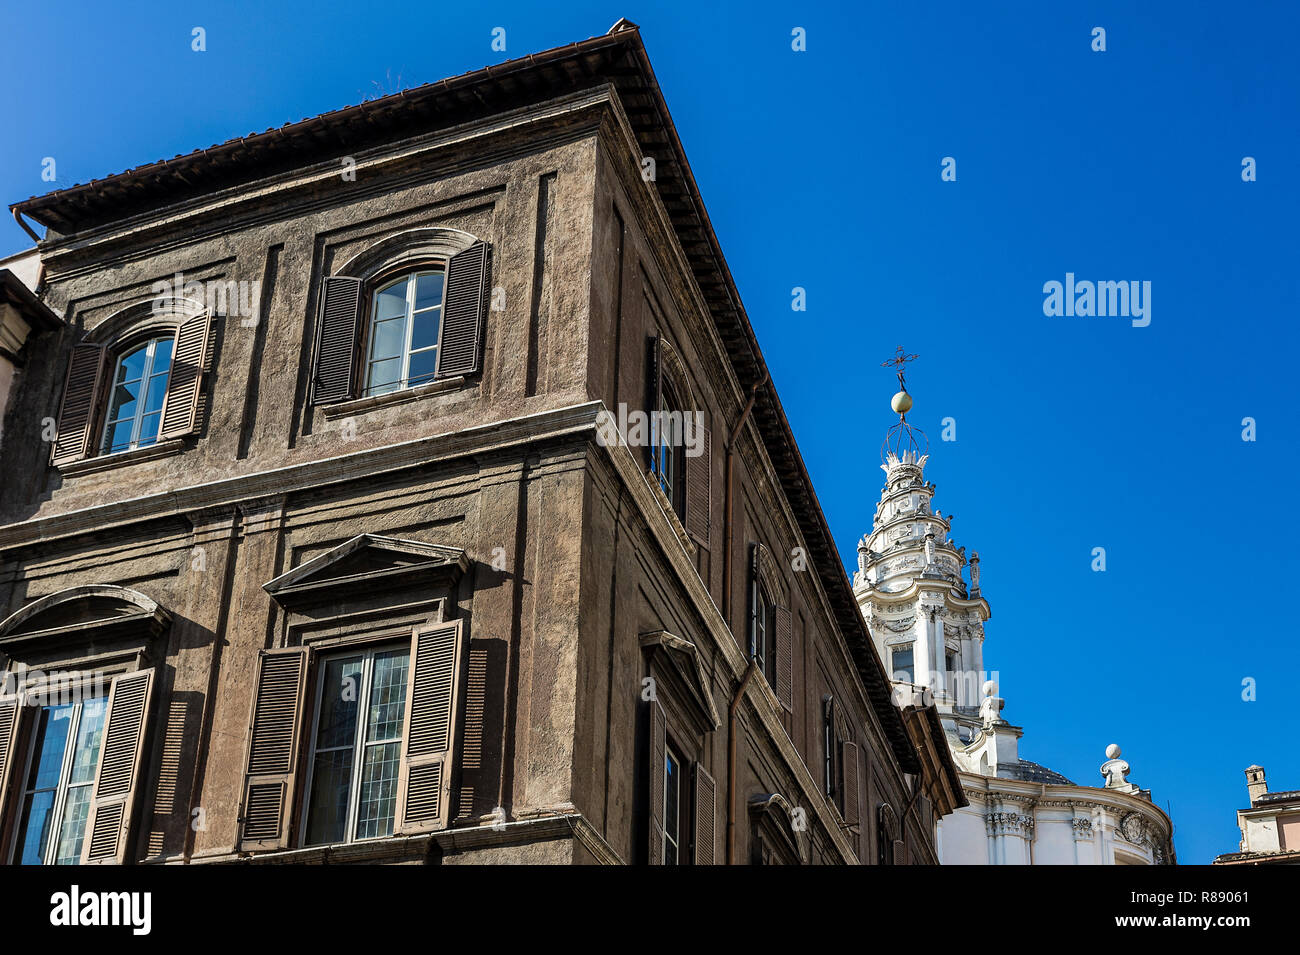 Dettagli architettonici nella città di Roma, Italia. Foto Stock